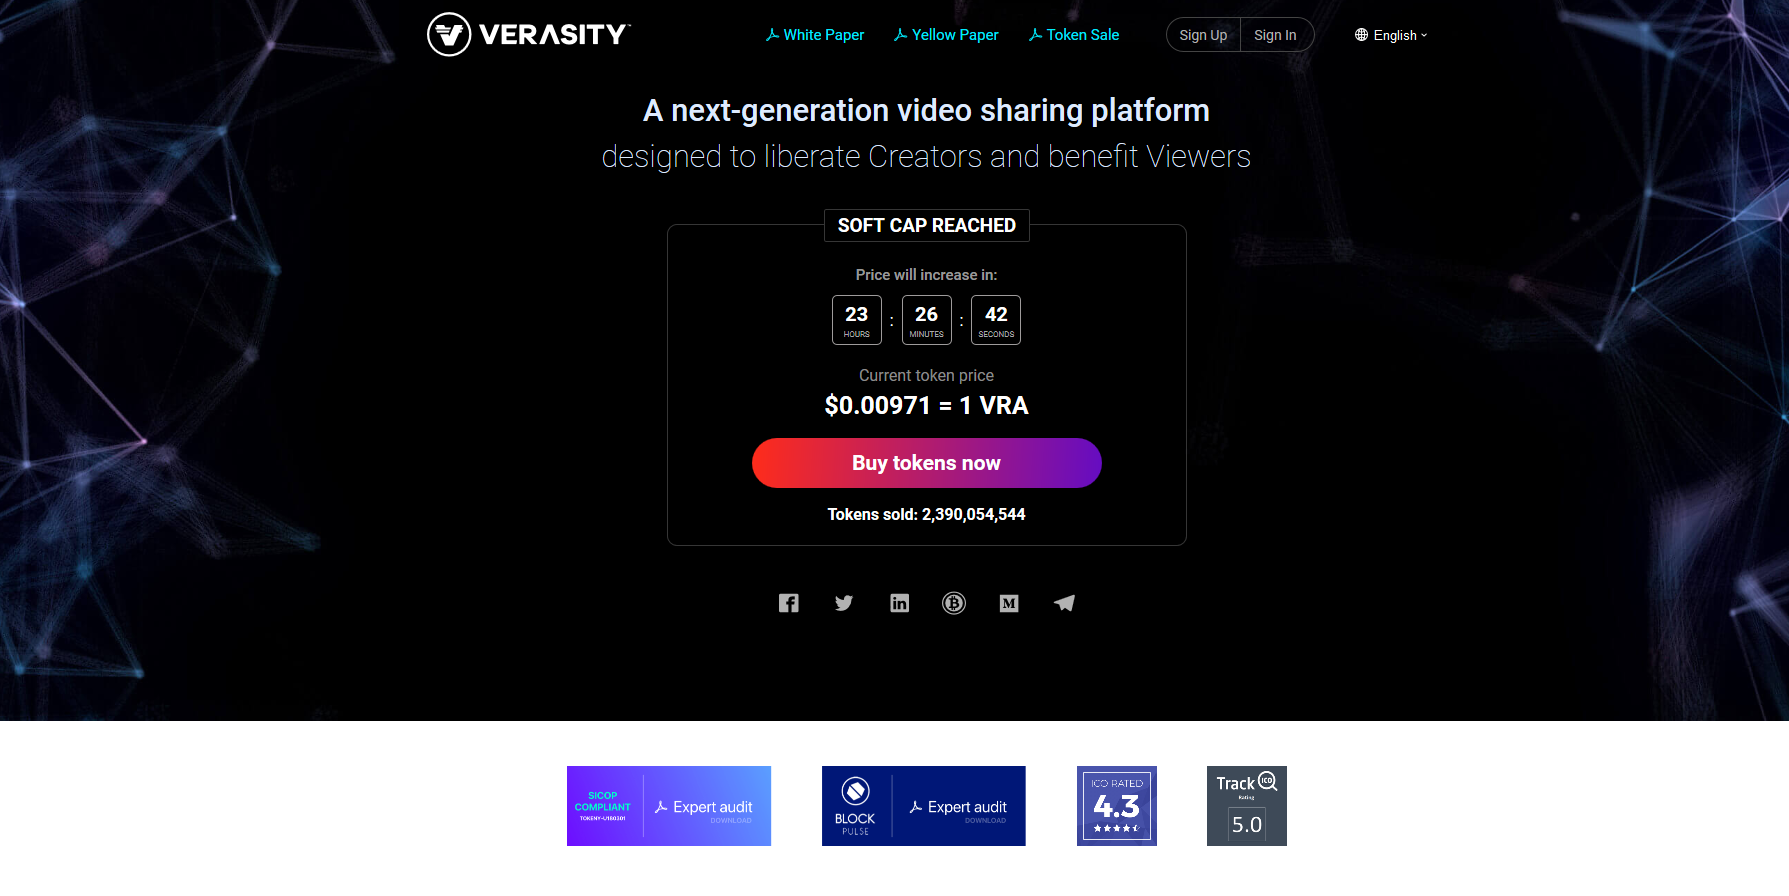 Screenshot-2018-6-22 Verasity - The blockchain powered video sharing economy.png